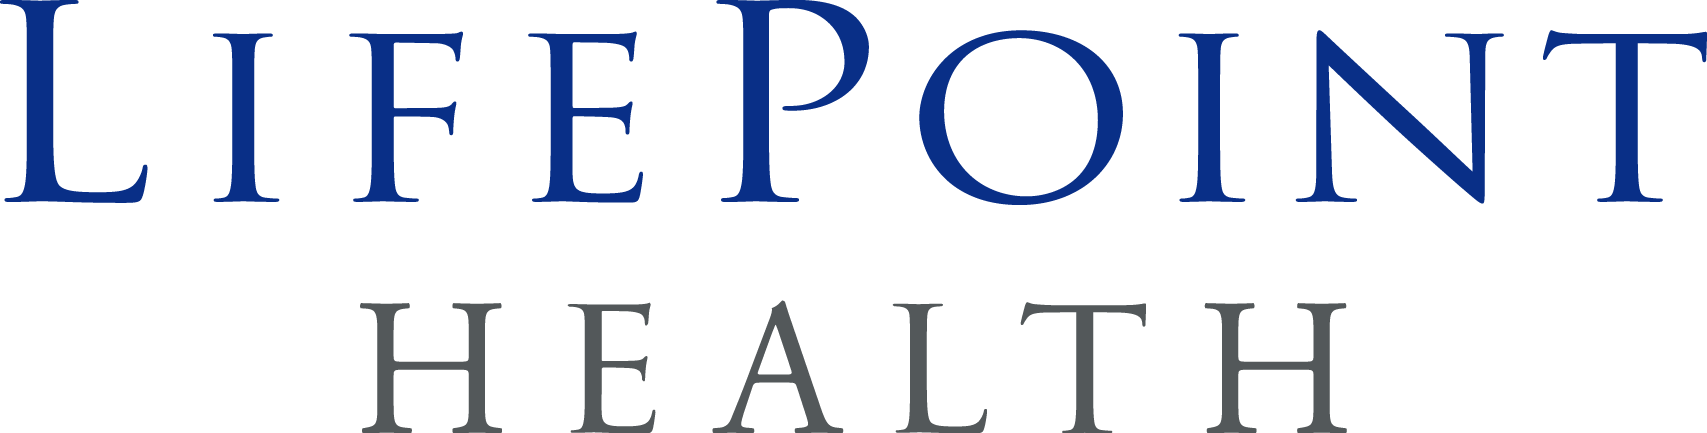 Partner Organizations - Shell Point Retirement Community Logo (1707x433)